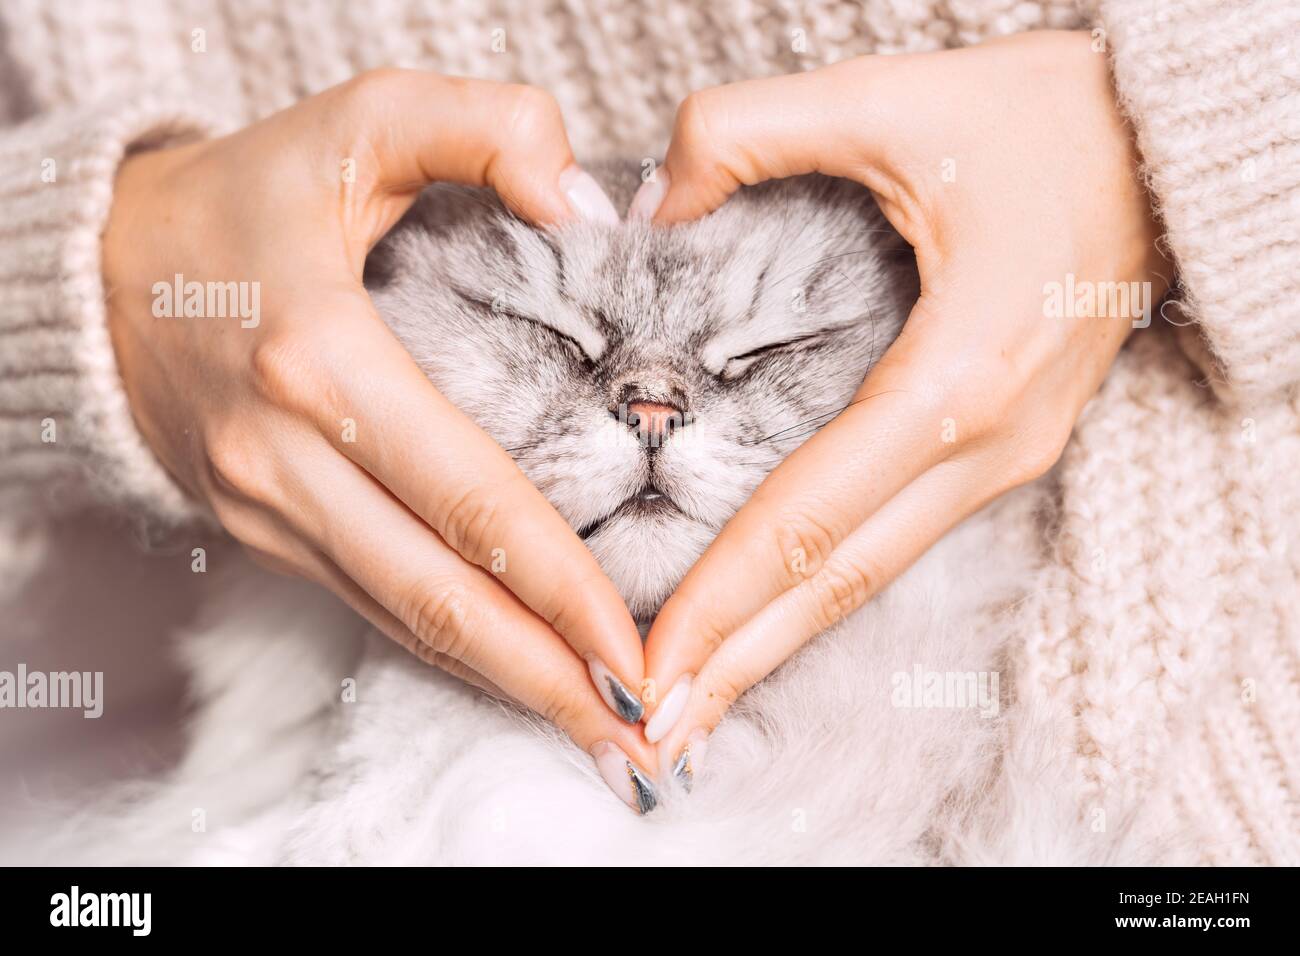 Frau hält ihre schöne flauschige niedliche Katze Gesicht und machen eine  Herzform mit ihren Händen. Liebe für die Tiere. Haustiere und  Lifestyle-Konzept Stockfotografie - Alamy